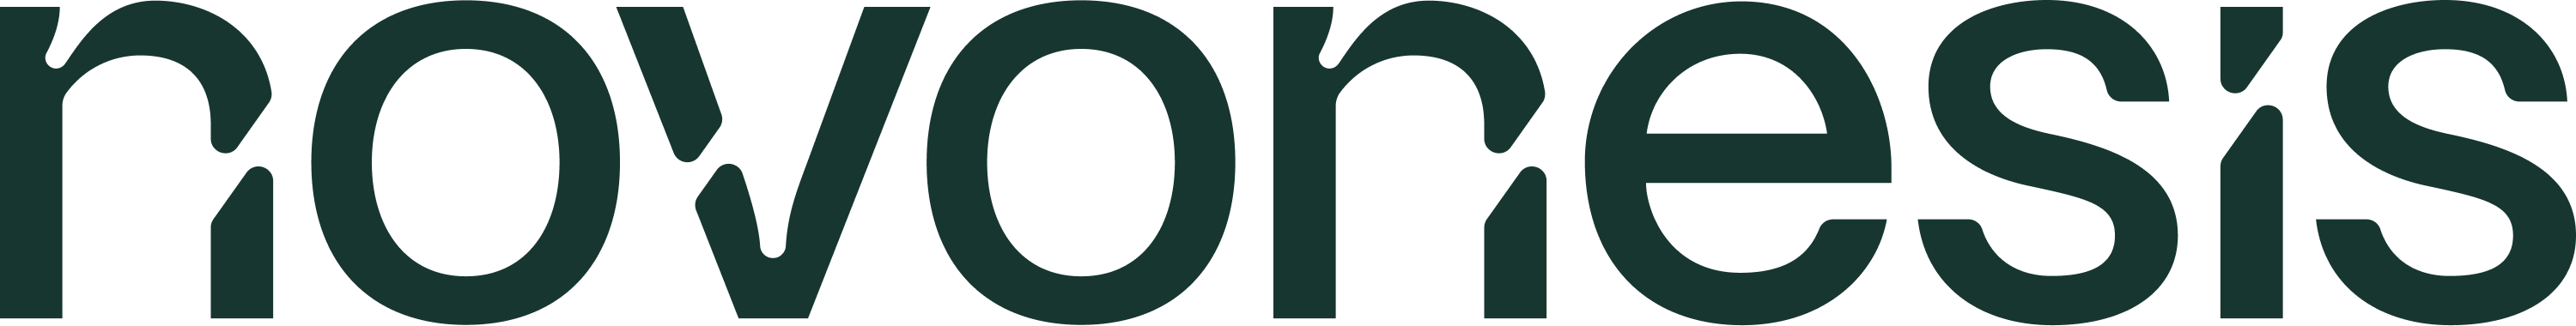 Novonesis logo and link to website